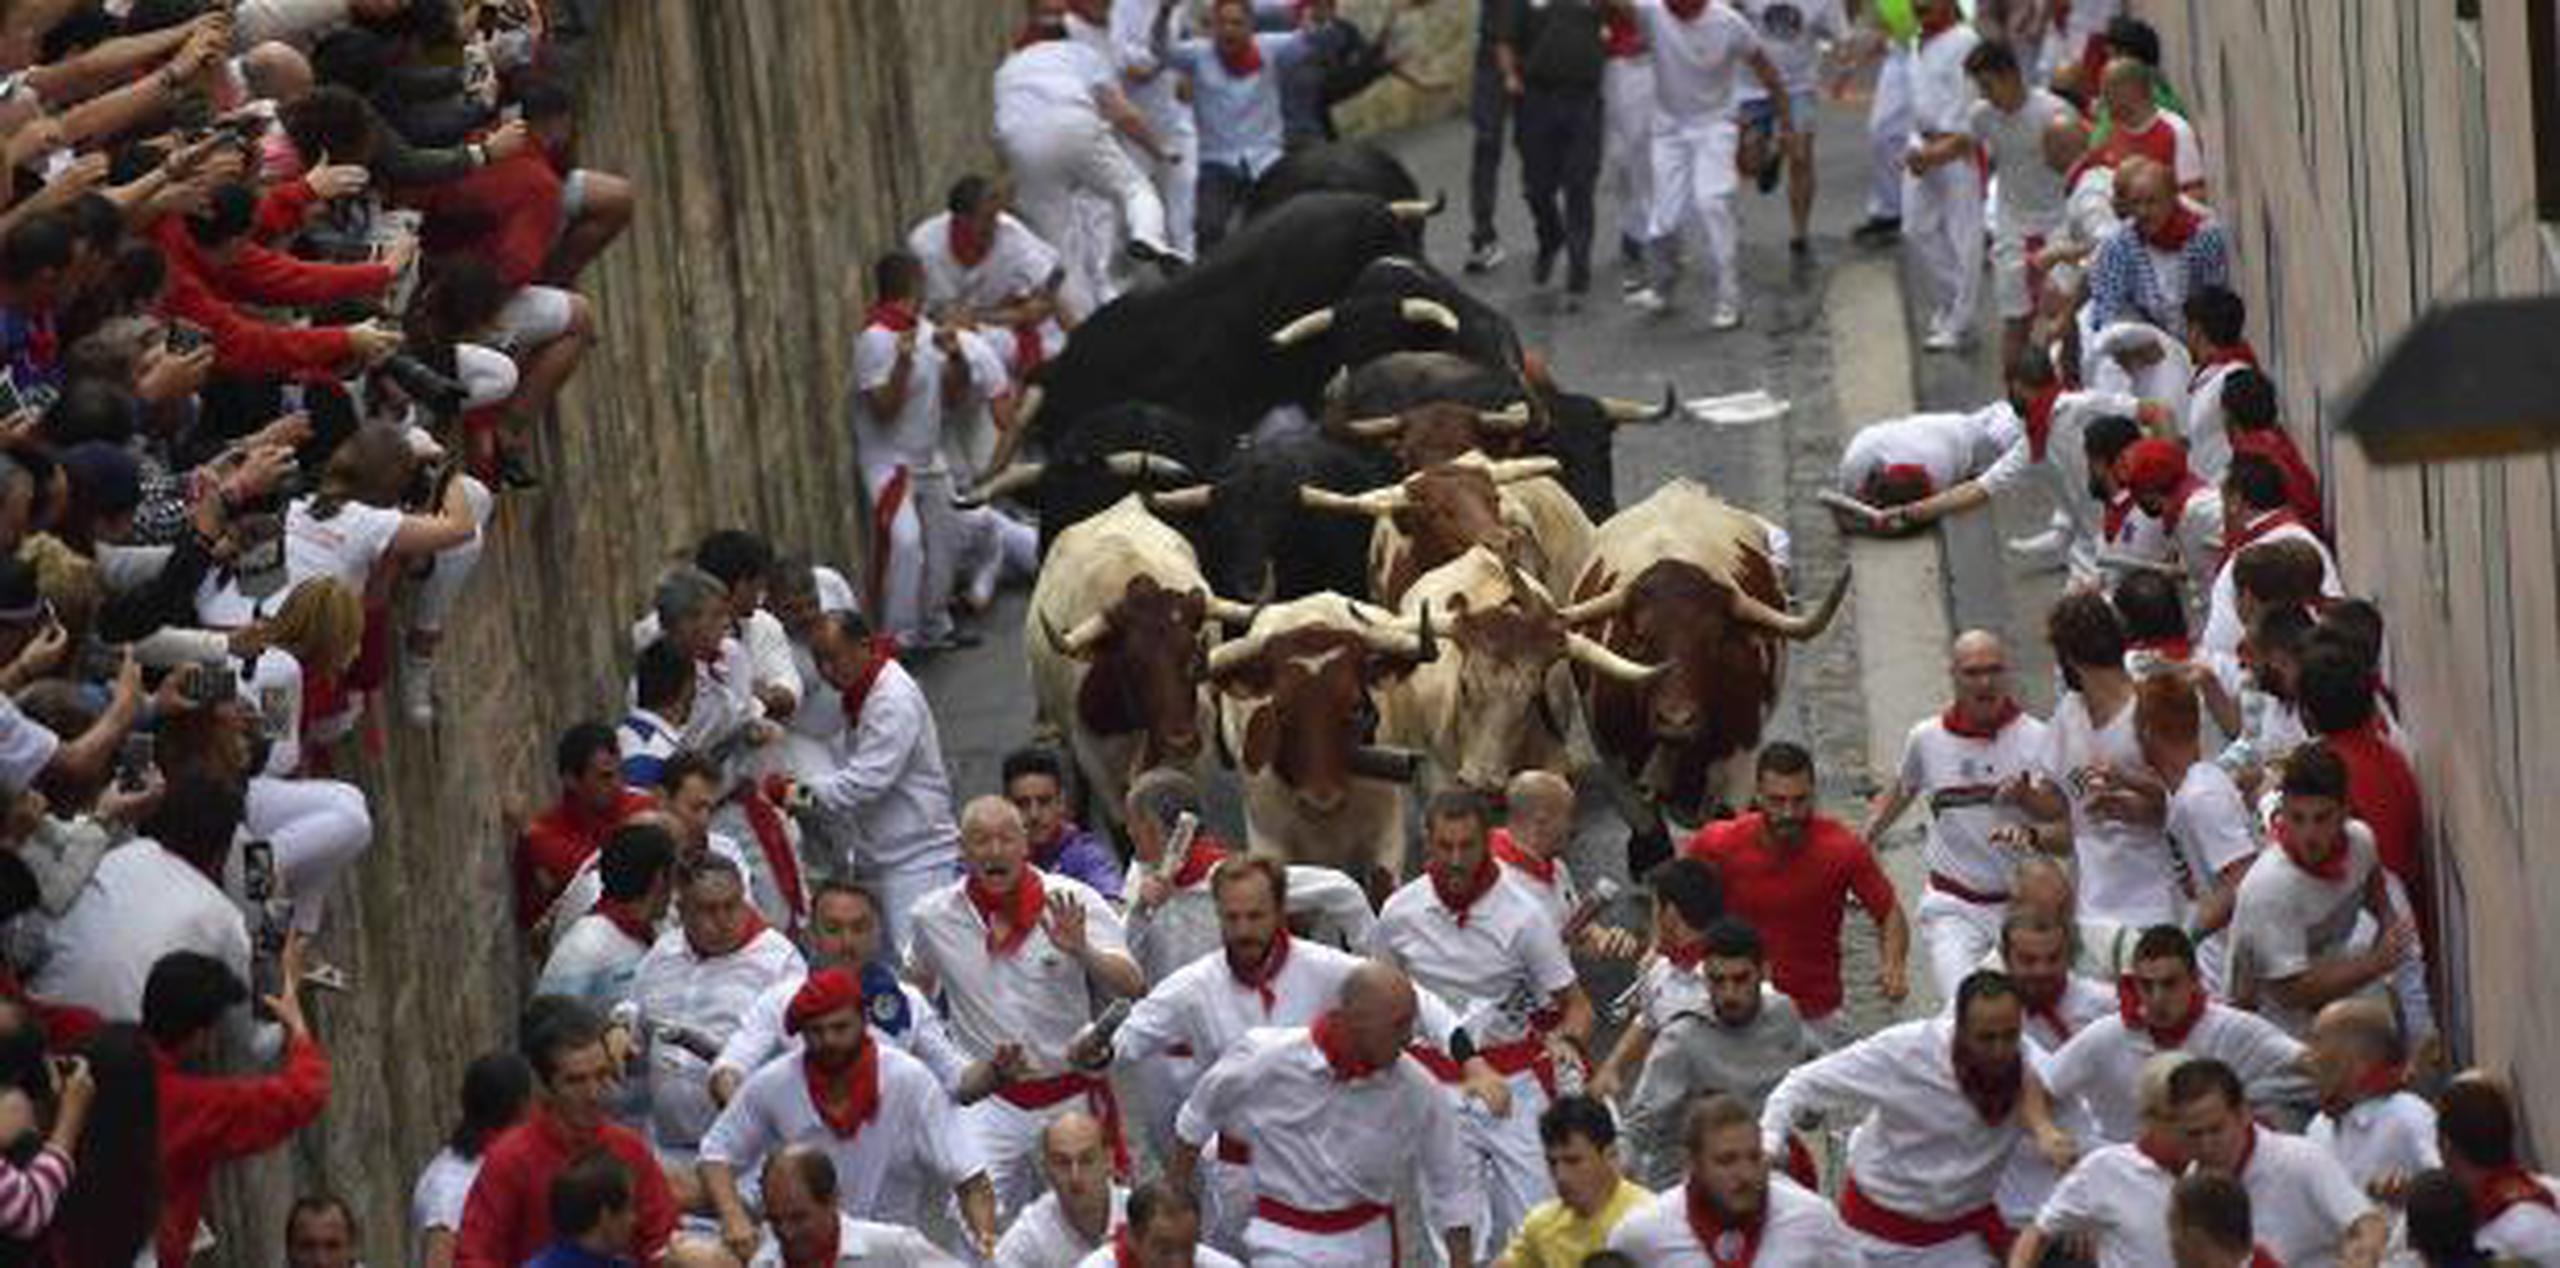 Los toros pesaban entre 1,100 a 1,400 libras cada uno. (AP / Alvaro Barrientos)